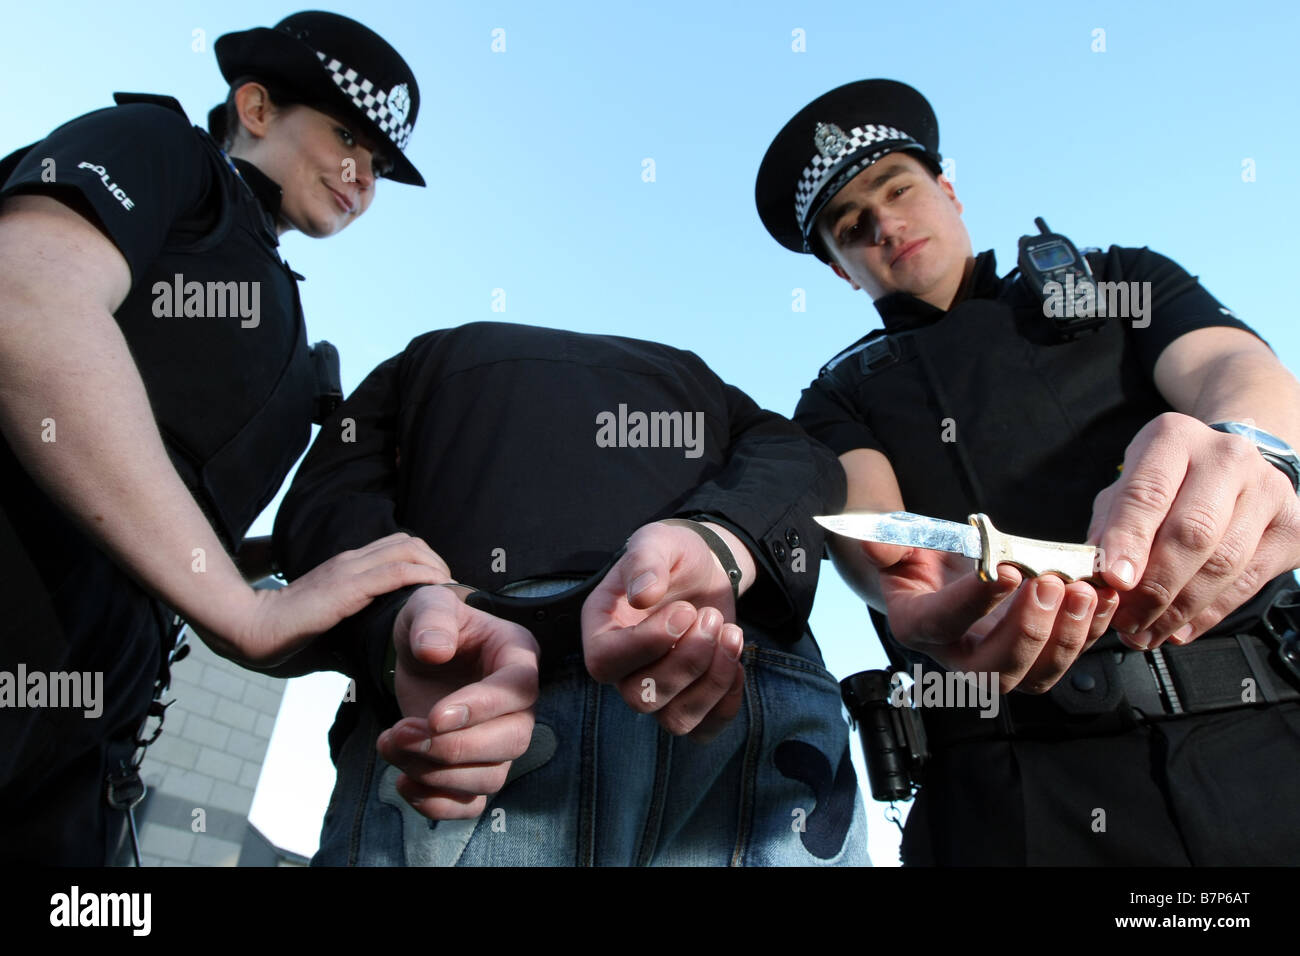 Des agents de police de Grampian Aberdeen, Écosse, Royaume-Uni, en train d'enlever une arme à lame d'un suspect dans les menottes Banque D'Images